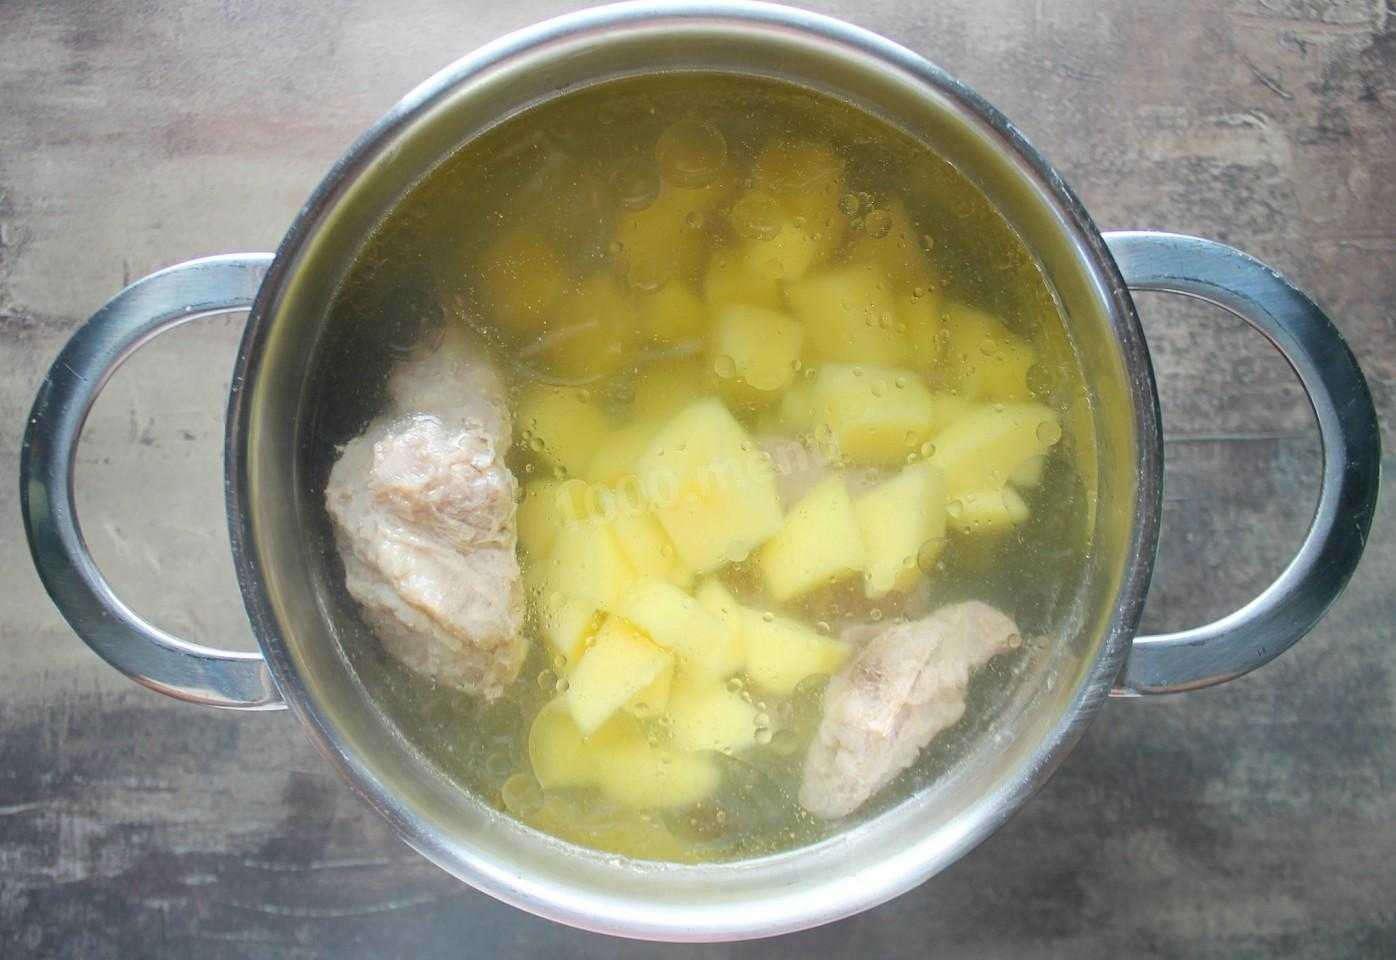 Жаркое с курицей и картошкой в кастрюле на плите рецепт с фото пошагово